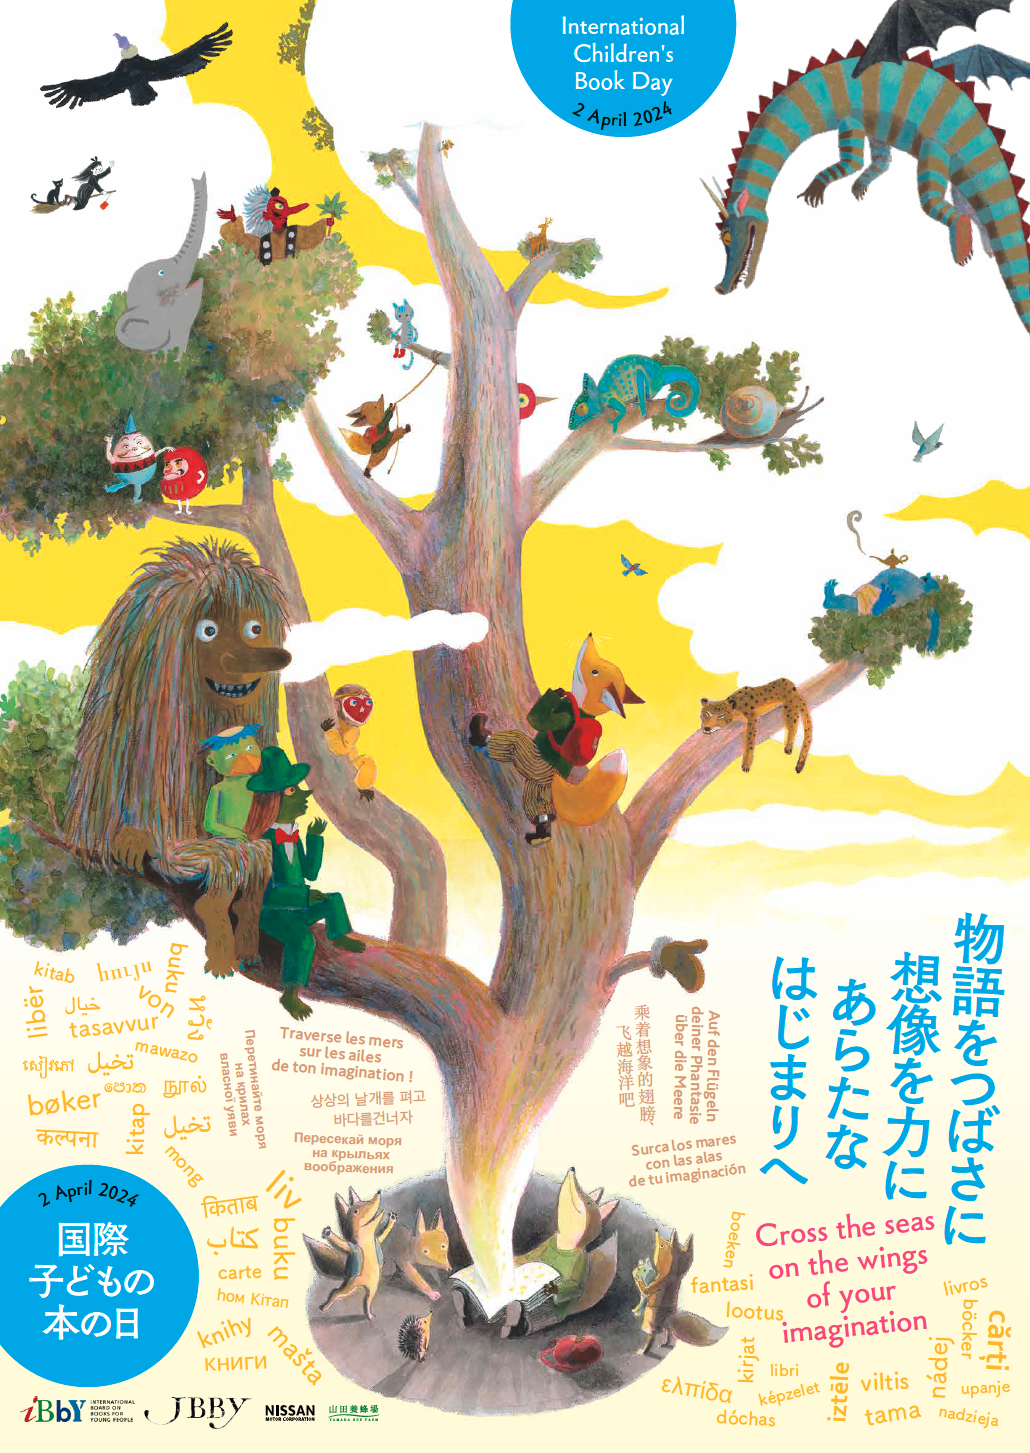 Plakat wydarzenia, z otwartej książki czytanej przez rodzinę lisów wyrasta drzewo, na jego gałęziach siedzą bohaterowie książek dla dzieci, wokół hasło przewodnie w różnych językach świata